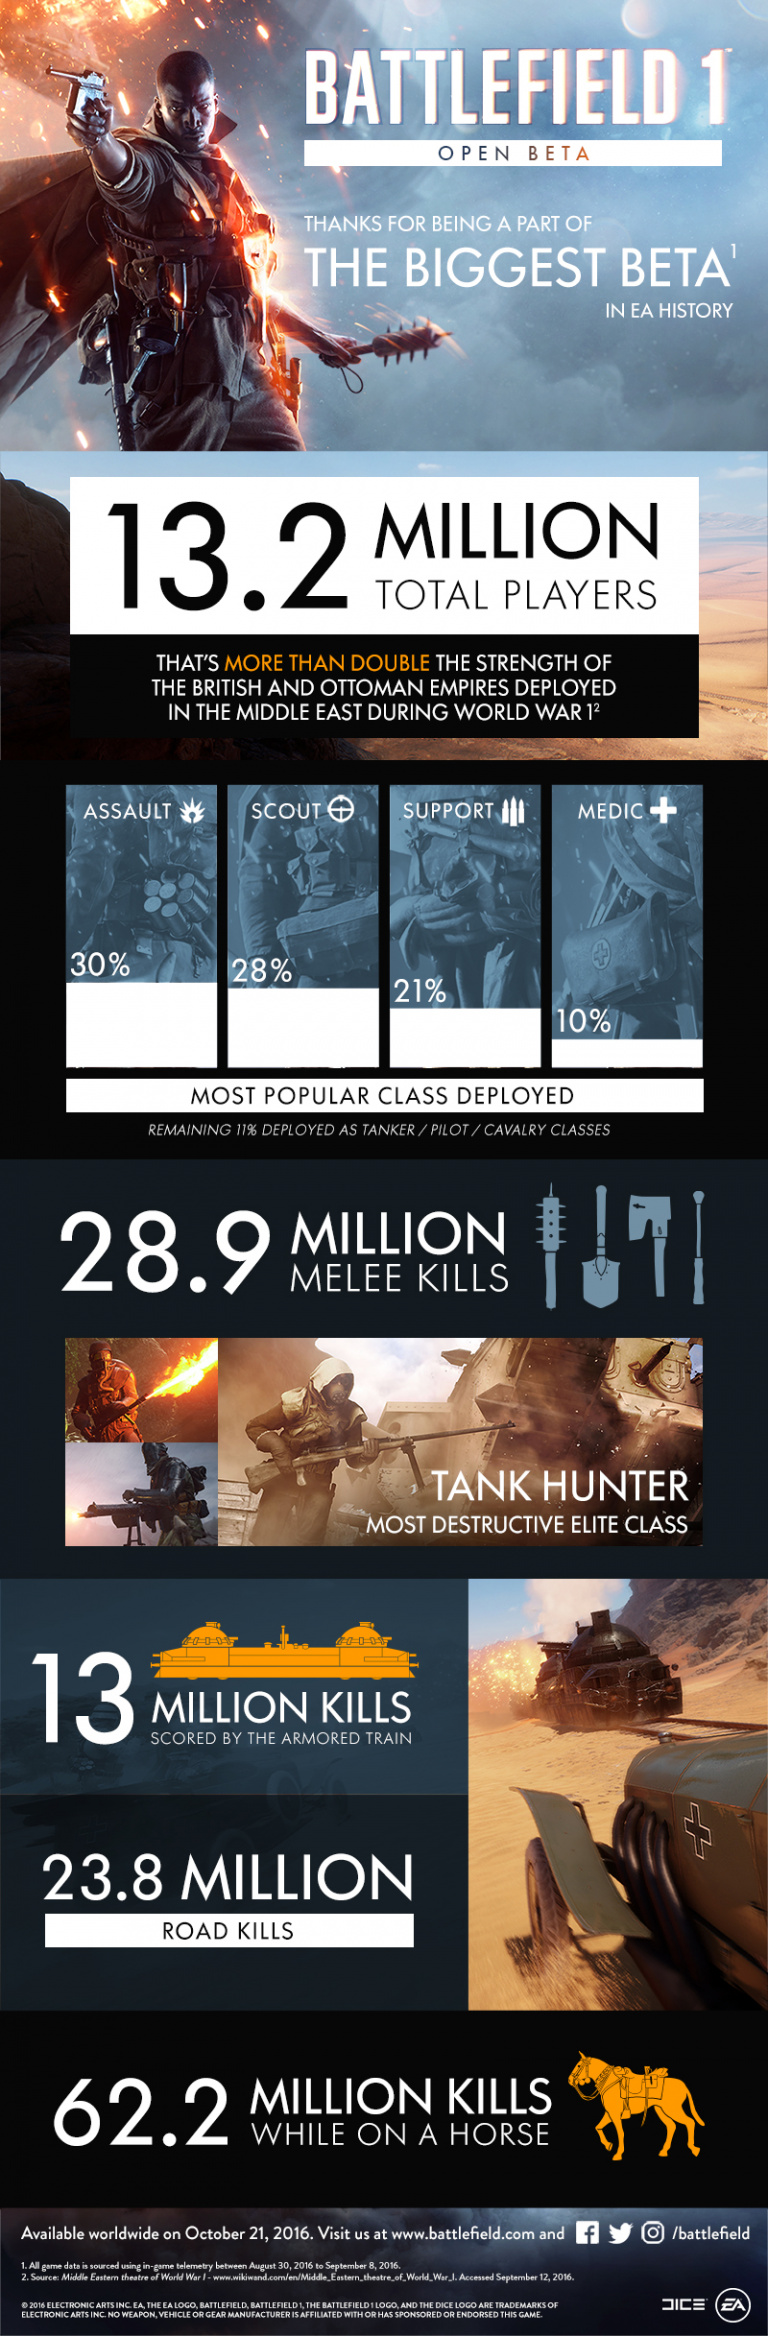 La beta de Battlefield 1 a accueilli 13,2 millions de joueurs